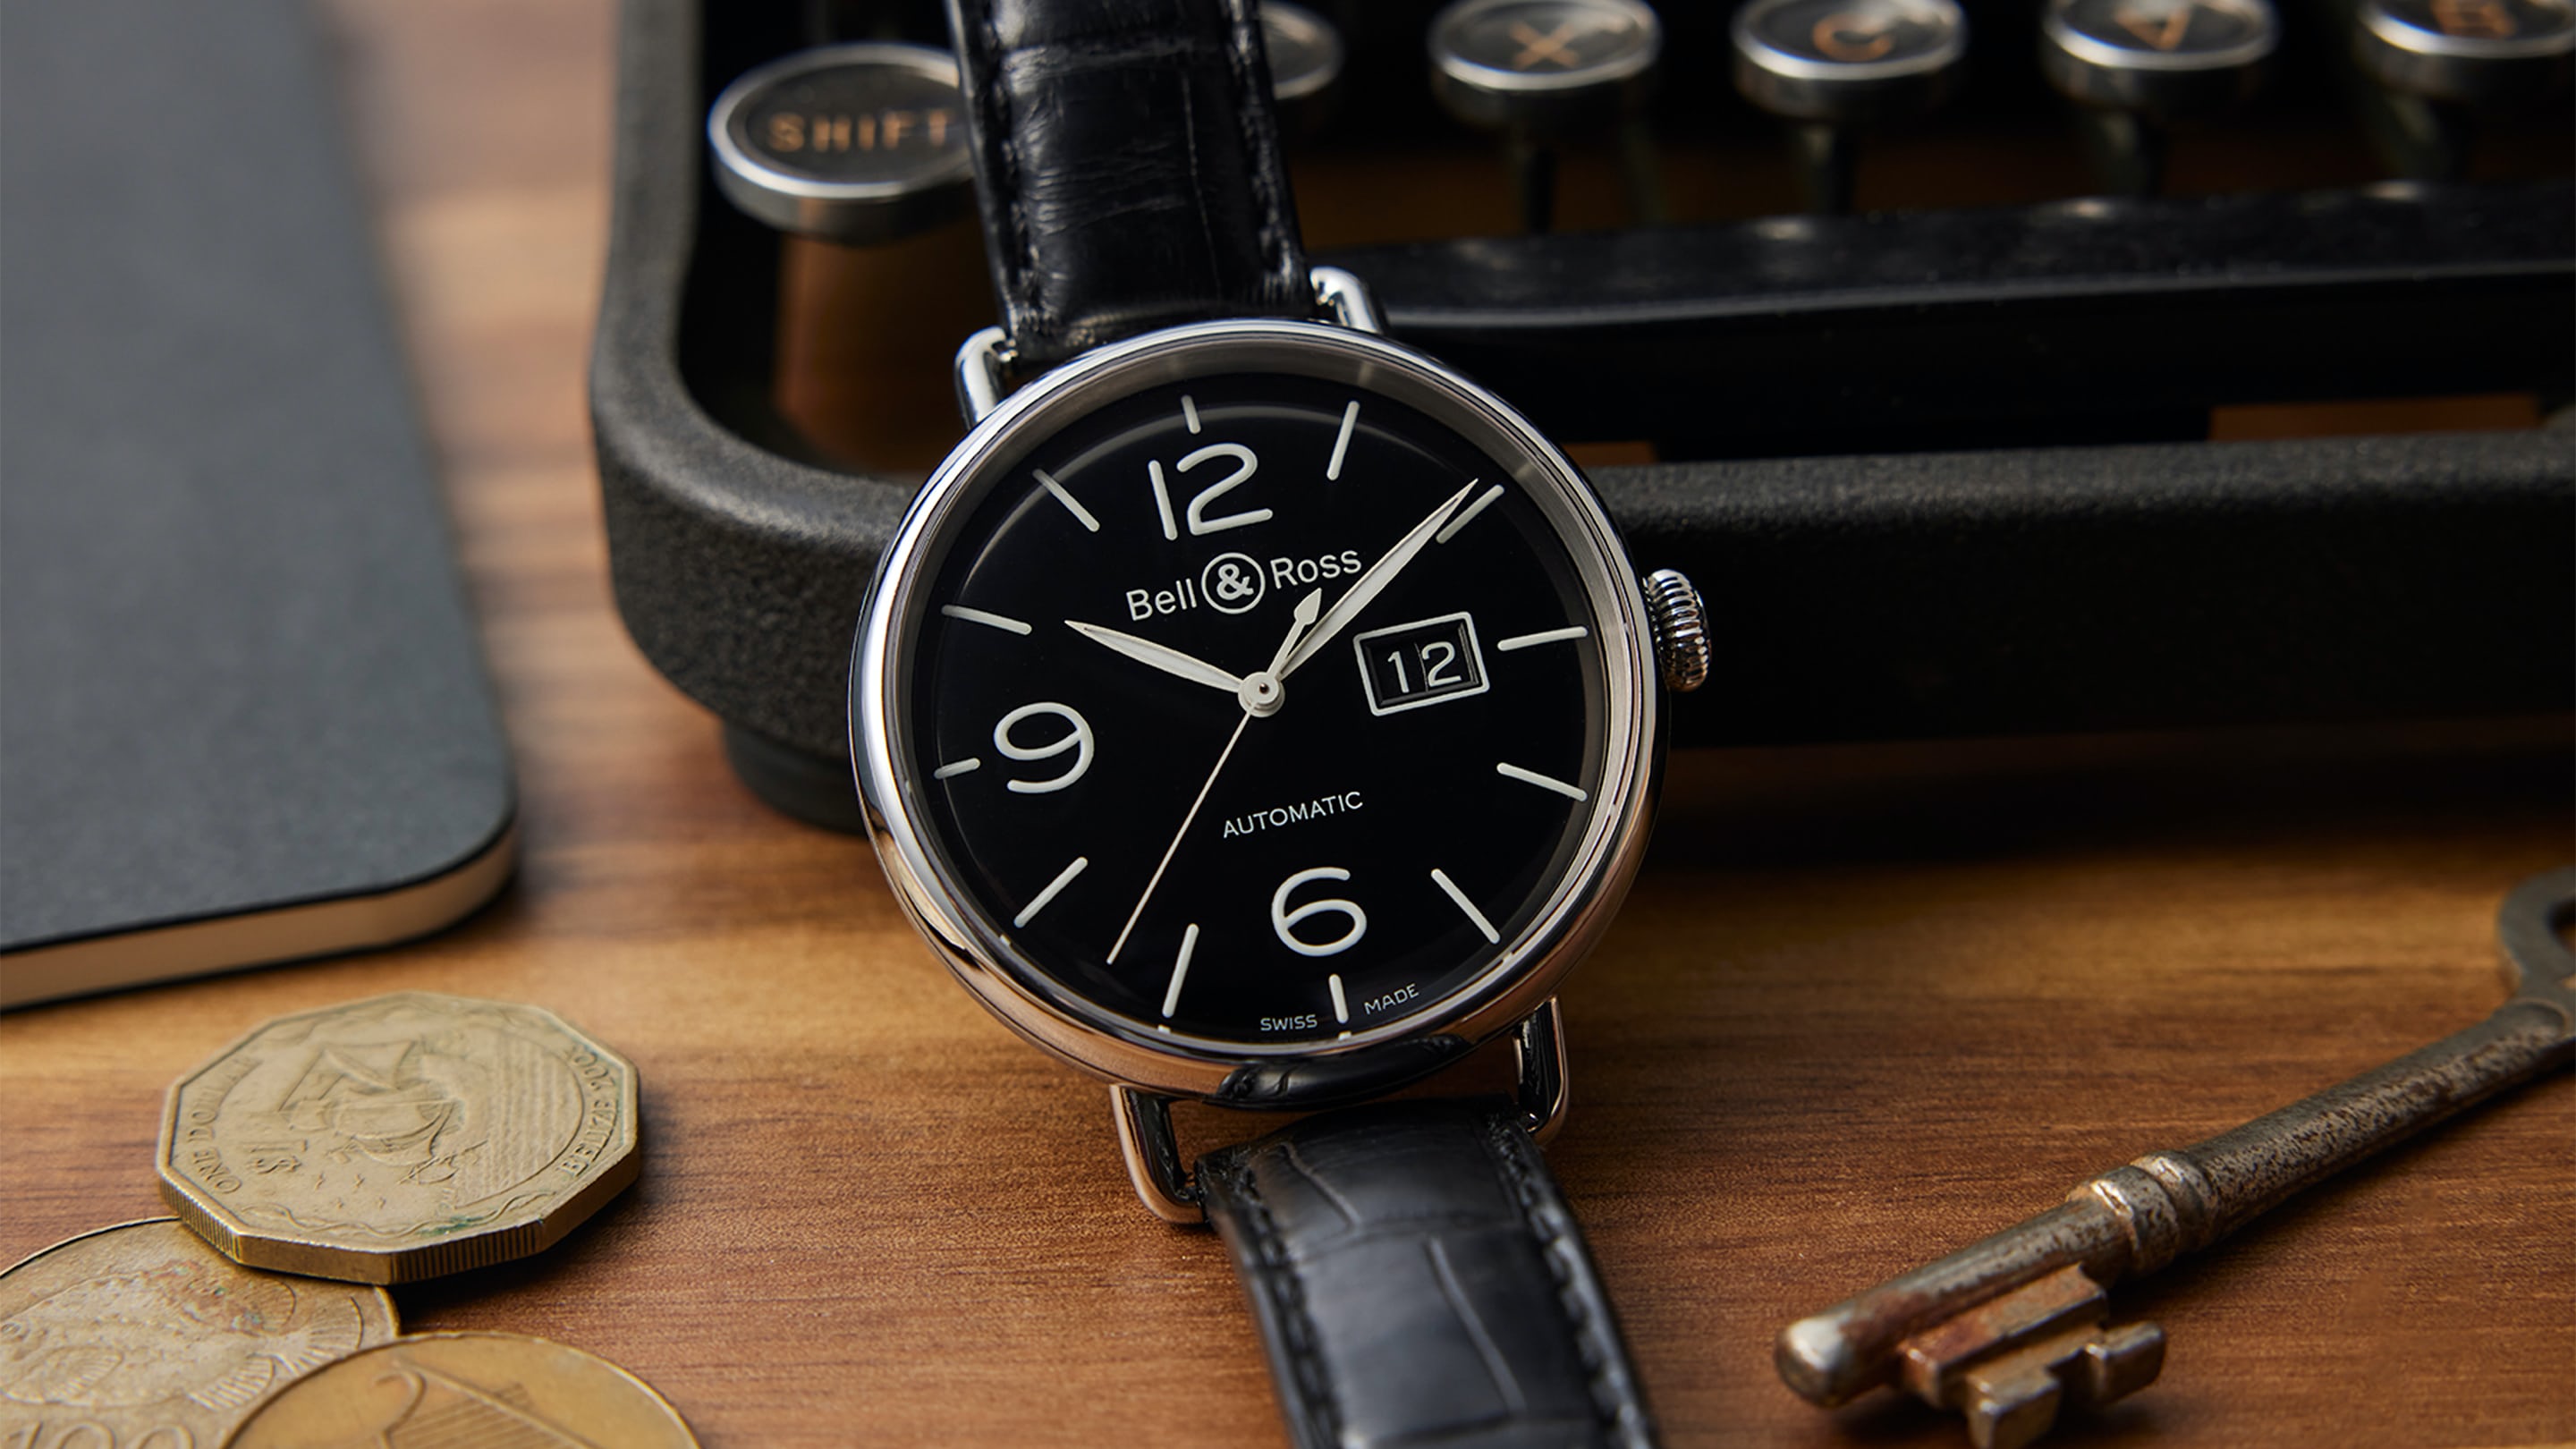 采访Bell & Ross 的创始人找不到完美的工具手表。所以他们决定创建自己的